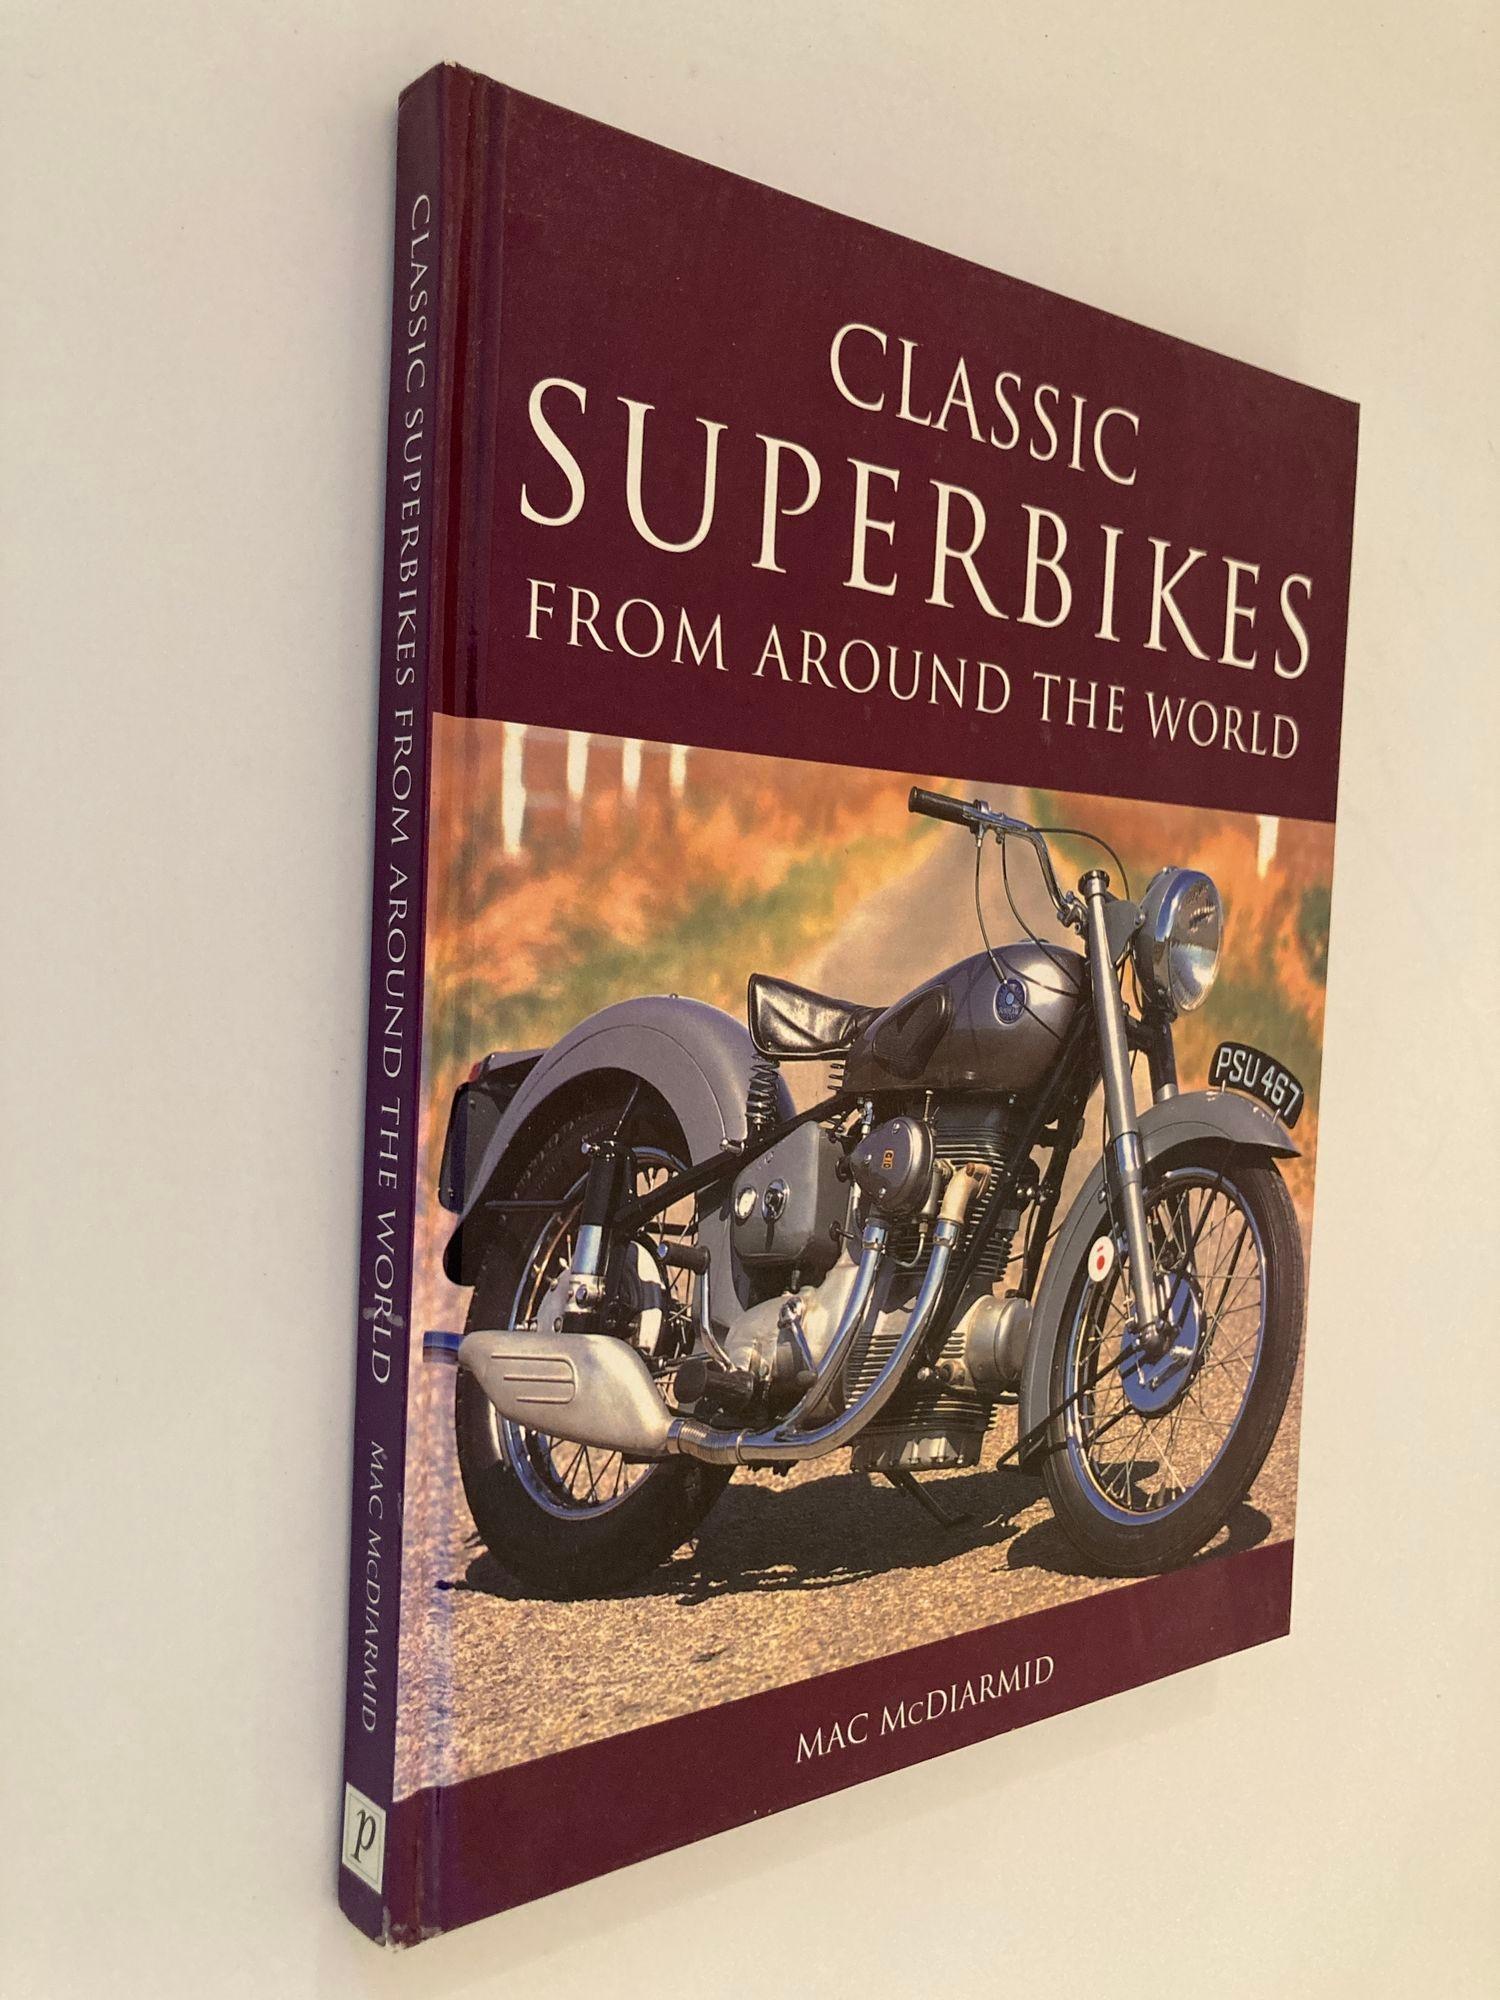 Classic Superbikes from Around the World Coffee Table Book Hardcover 2003.
von Mac. McDiarmid.
Das Tolle an Mac McDiarmids Buch Classic Superbikes from Around the World.
Das Buch gibt uns nicht nur einen Einblick in einige seltene Exemplare, die die